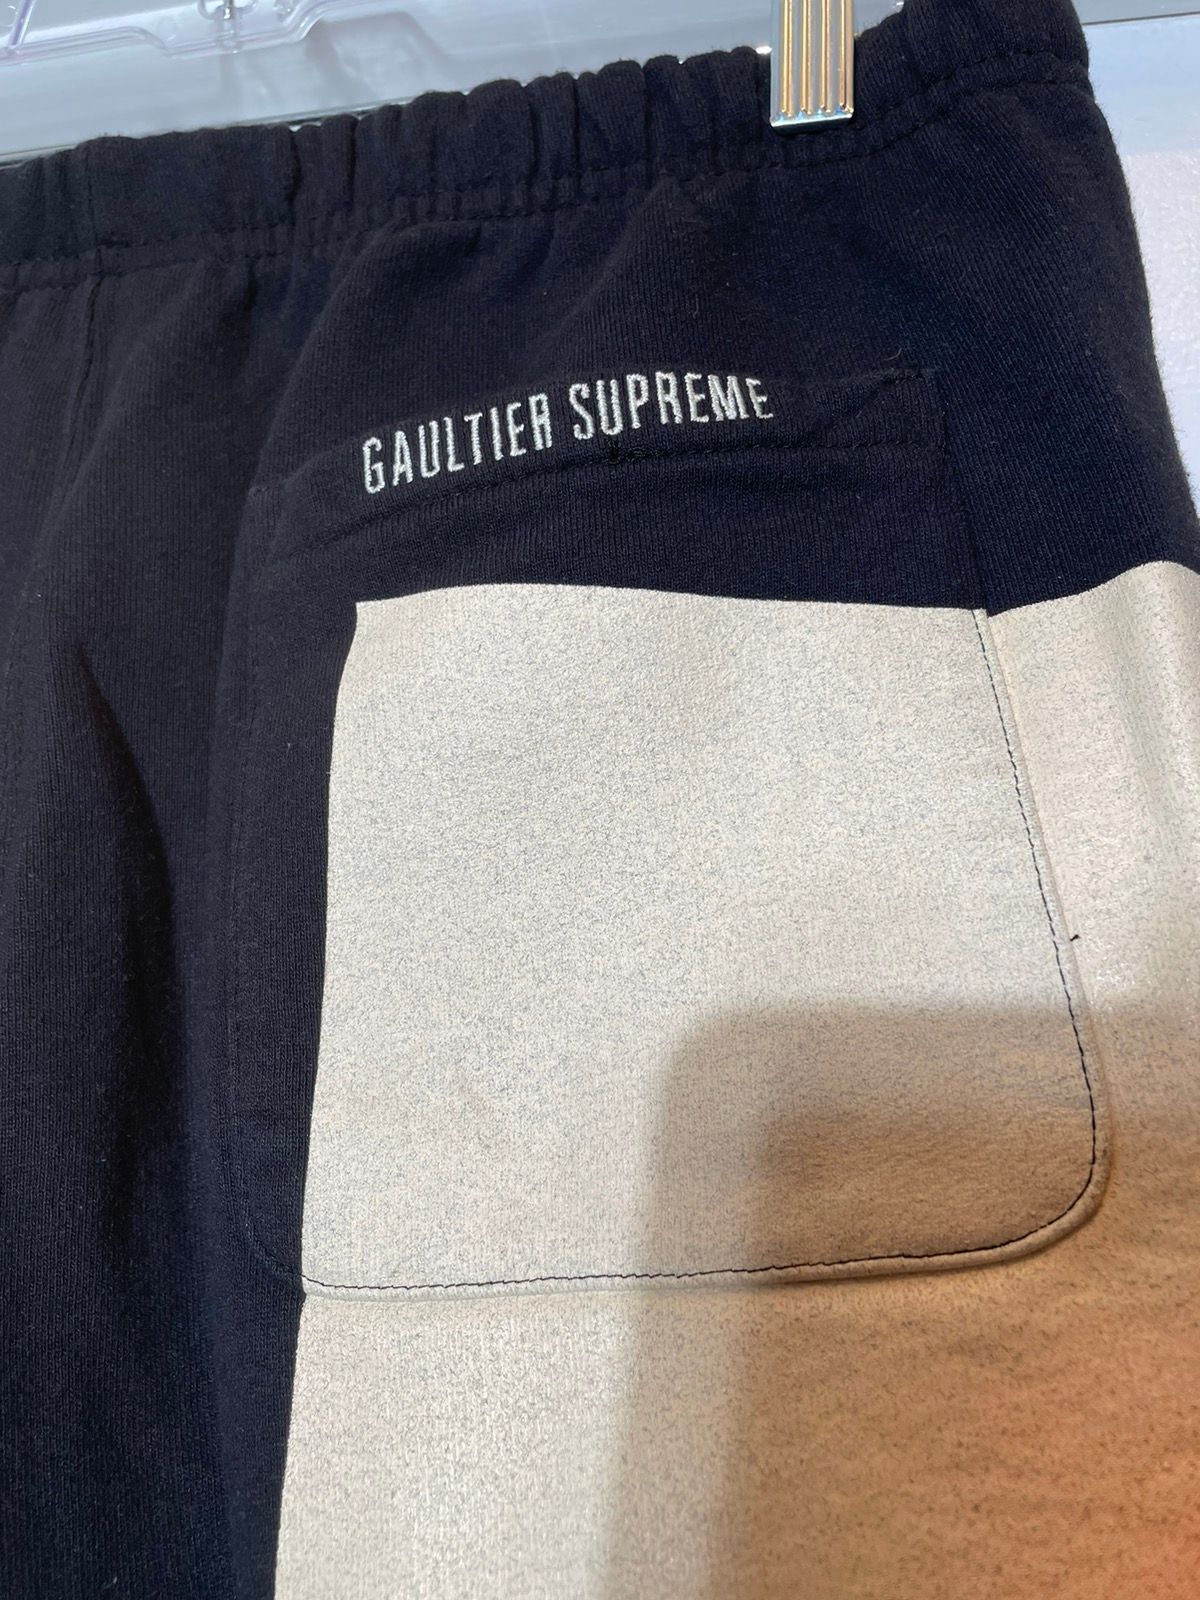 Supreme Supreme Jean Paul Gaultier Floral Sweatpants SS ‘19 Size US 32 / EU 48 - 6 Thumbnail